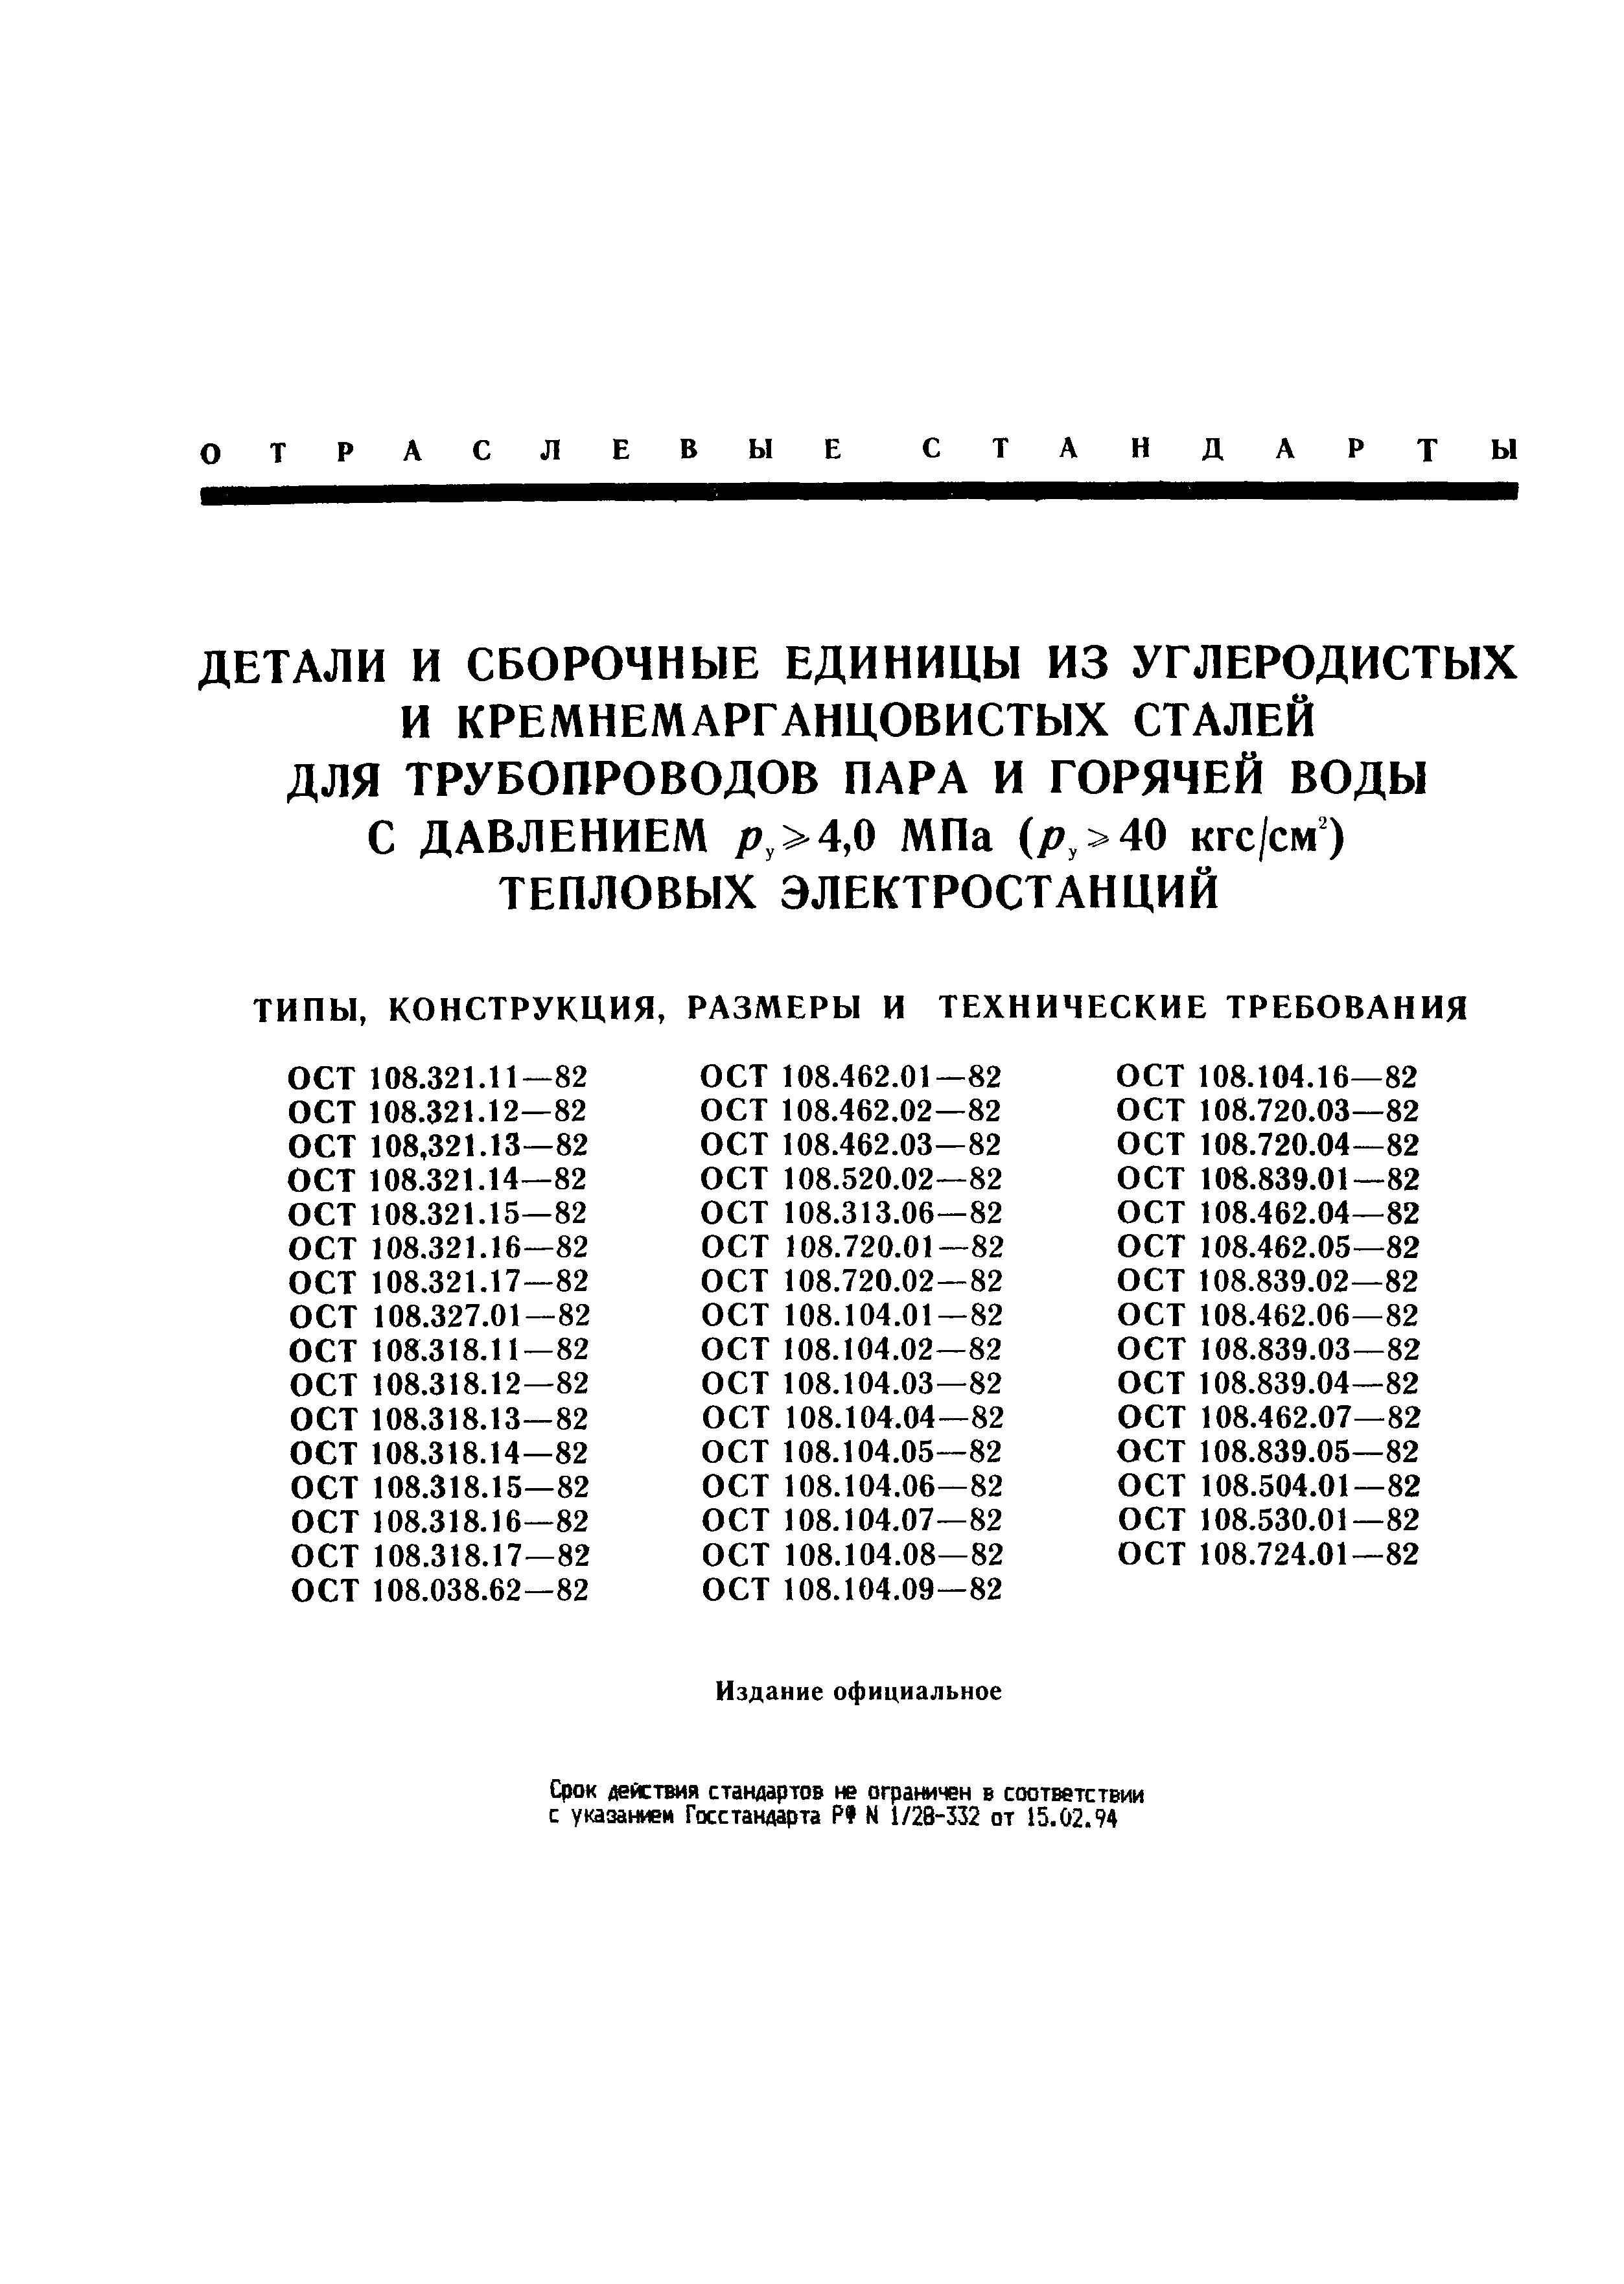 ОСТ 108.462.01-82